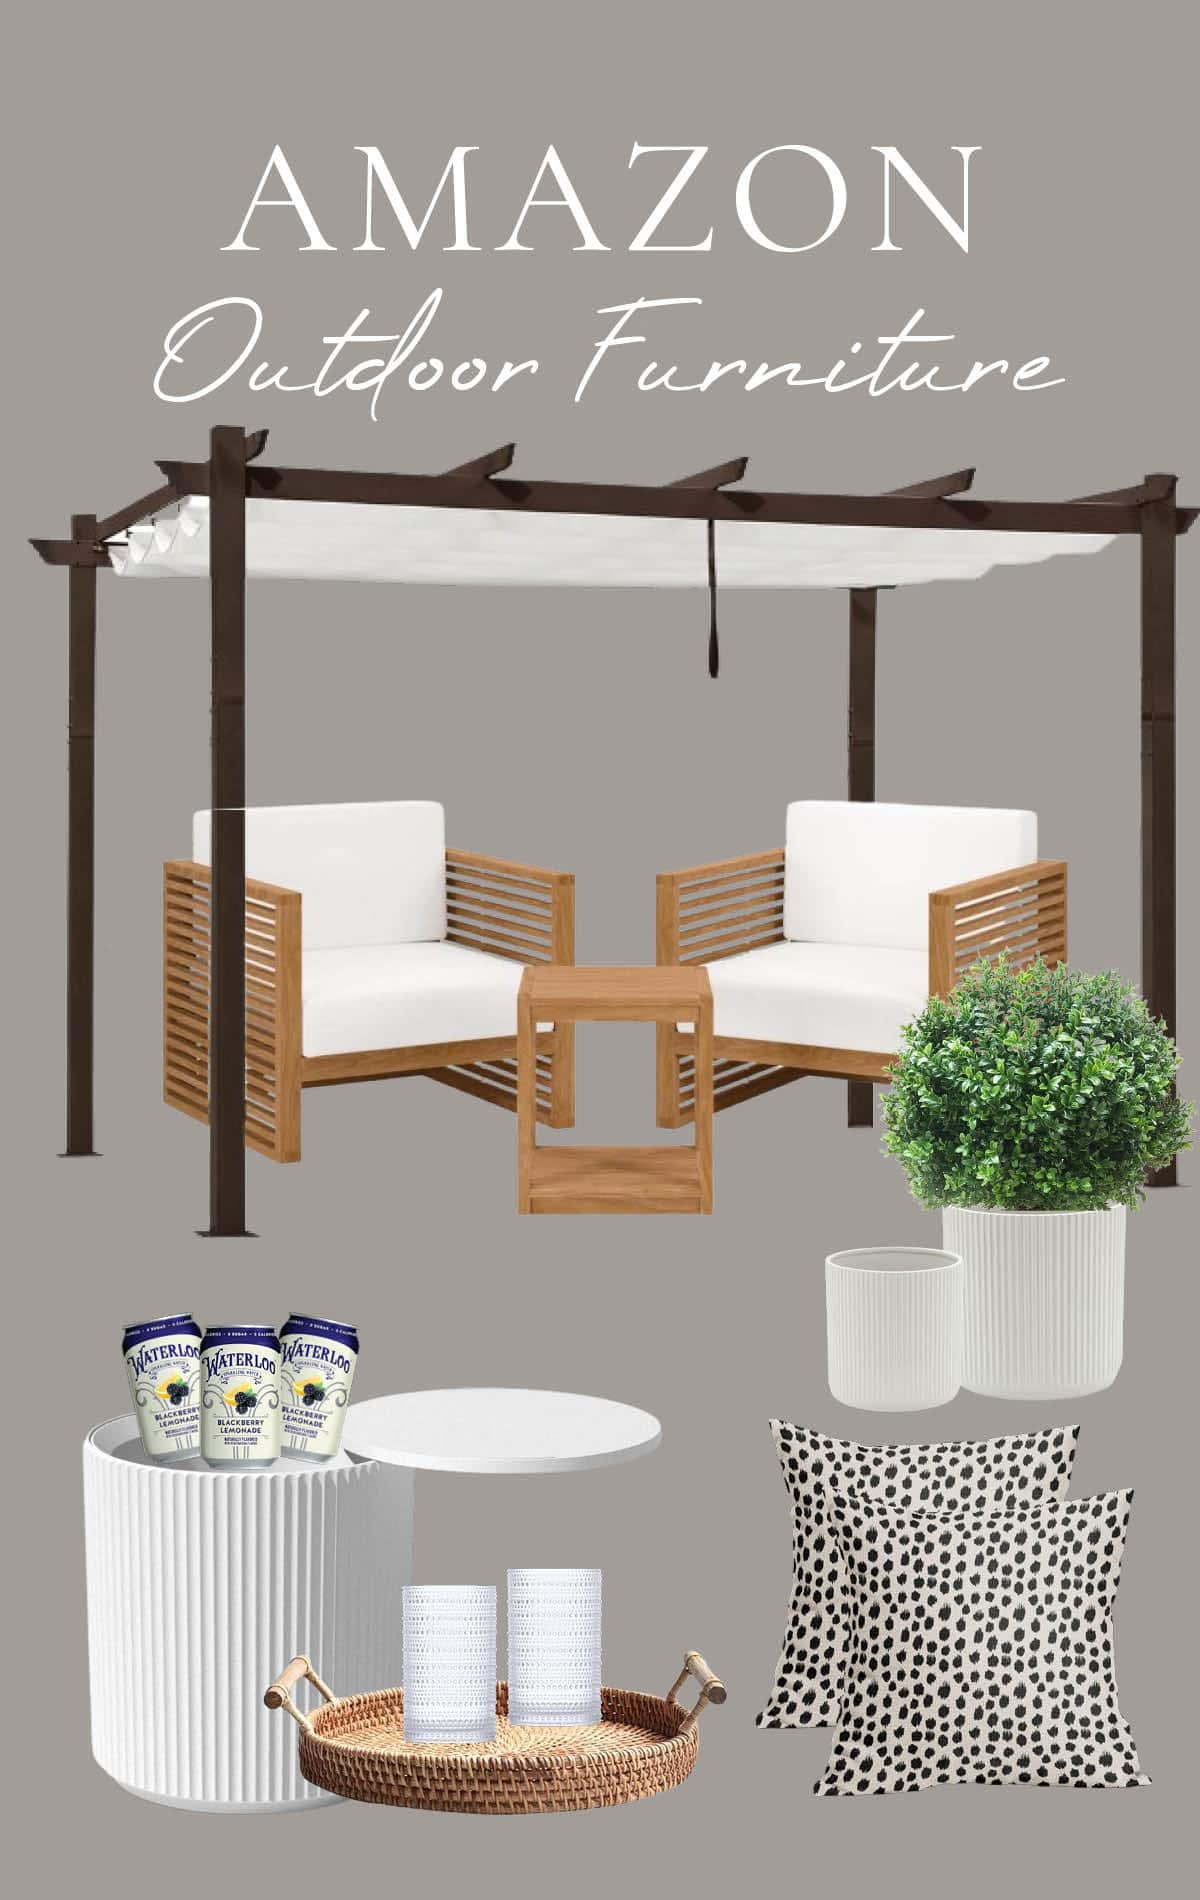 Amazon outdoor furniture and pergola modern patio mood board interior design